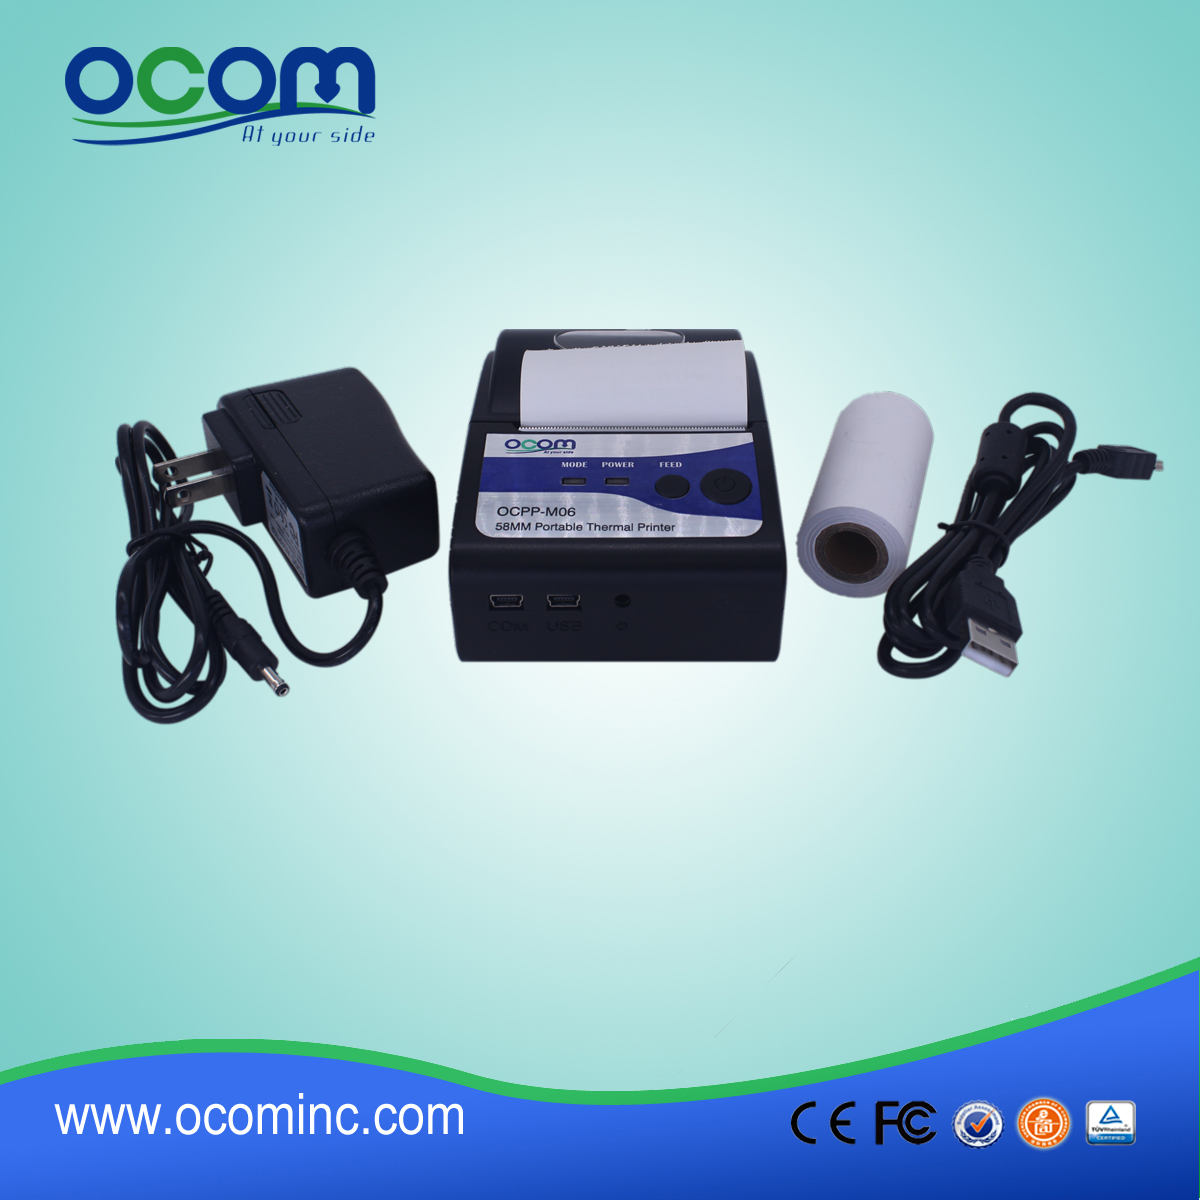 (OCPP-M06) OCOM caliente venta bluetooth impresora pos, impresora de la posición 58